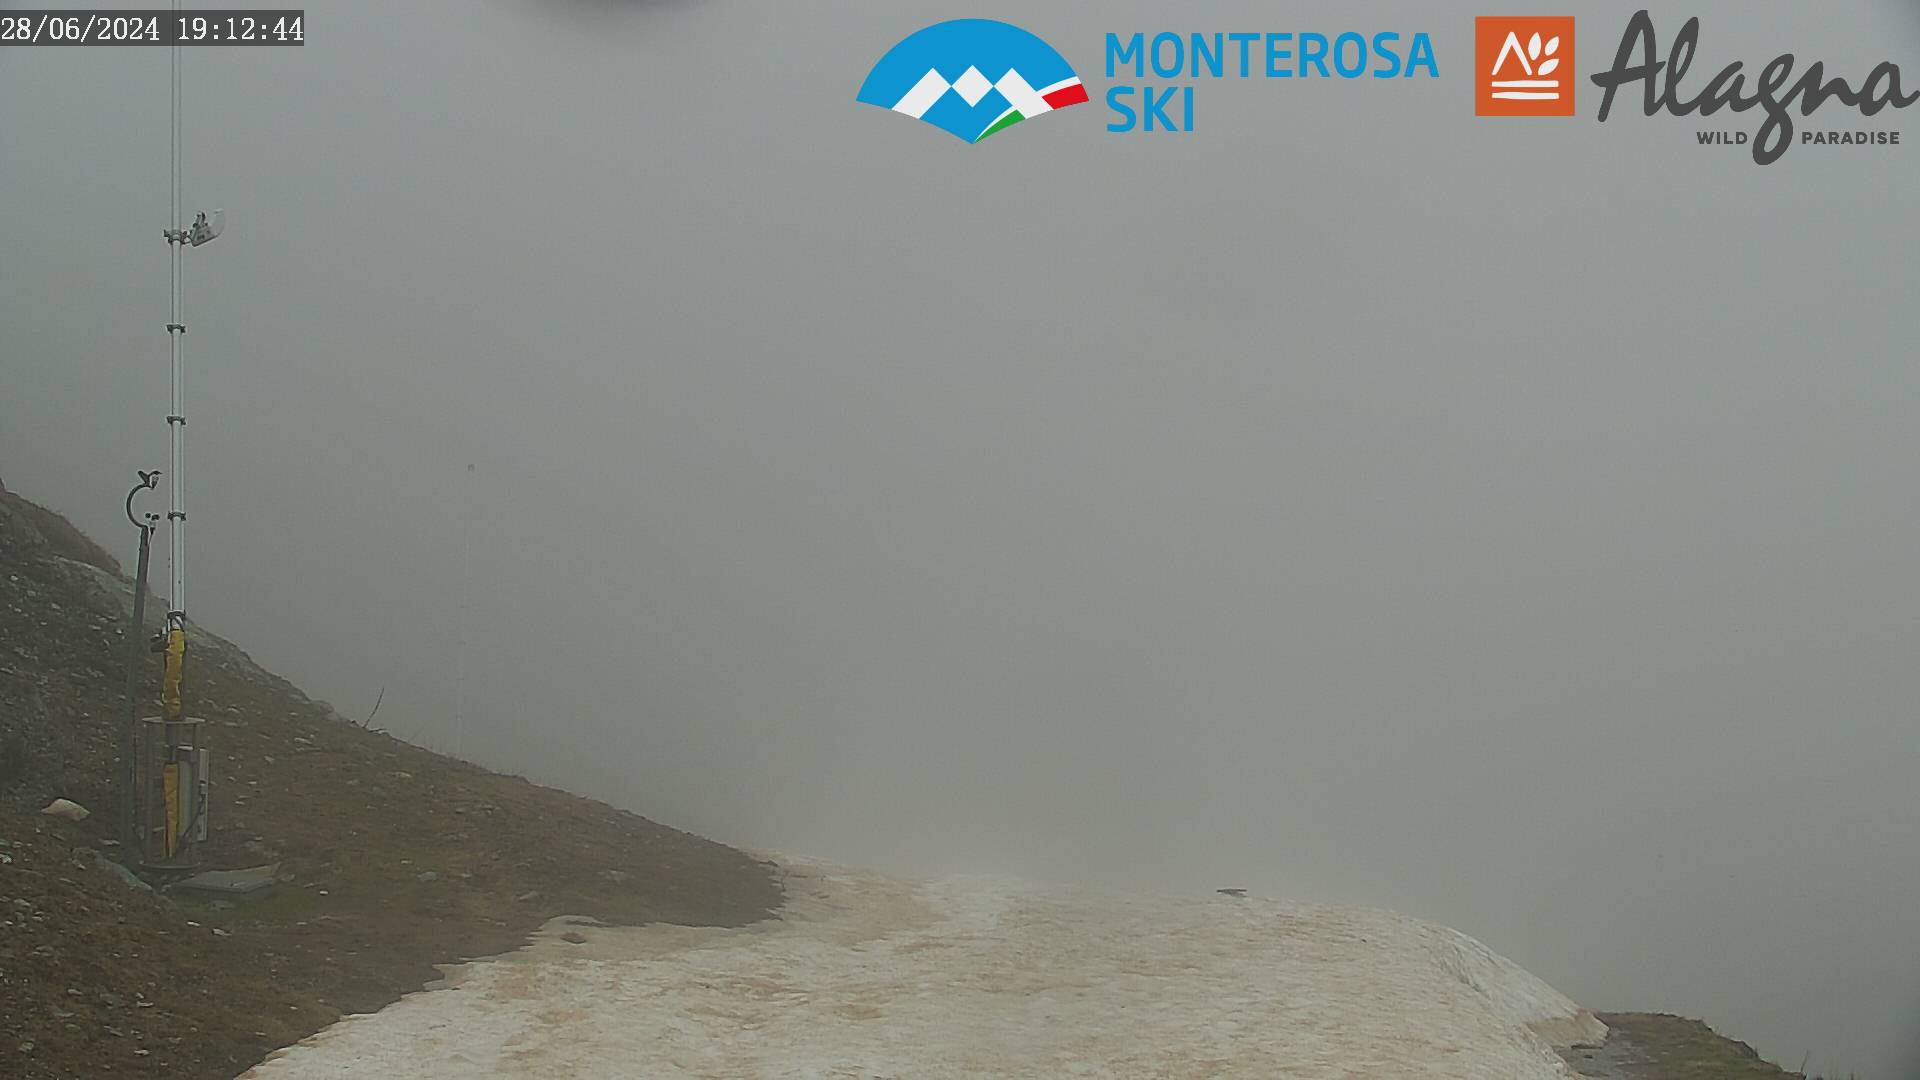 Monterosa-ski Alagna Valsesia - Panorama da Bocchetta delle Pisse